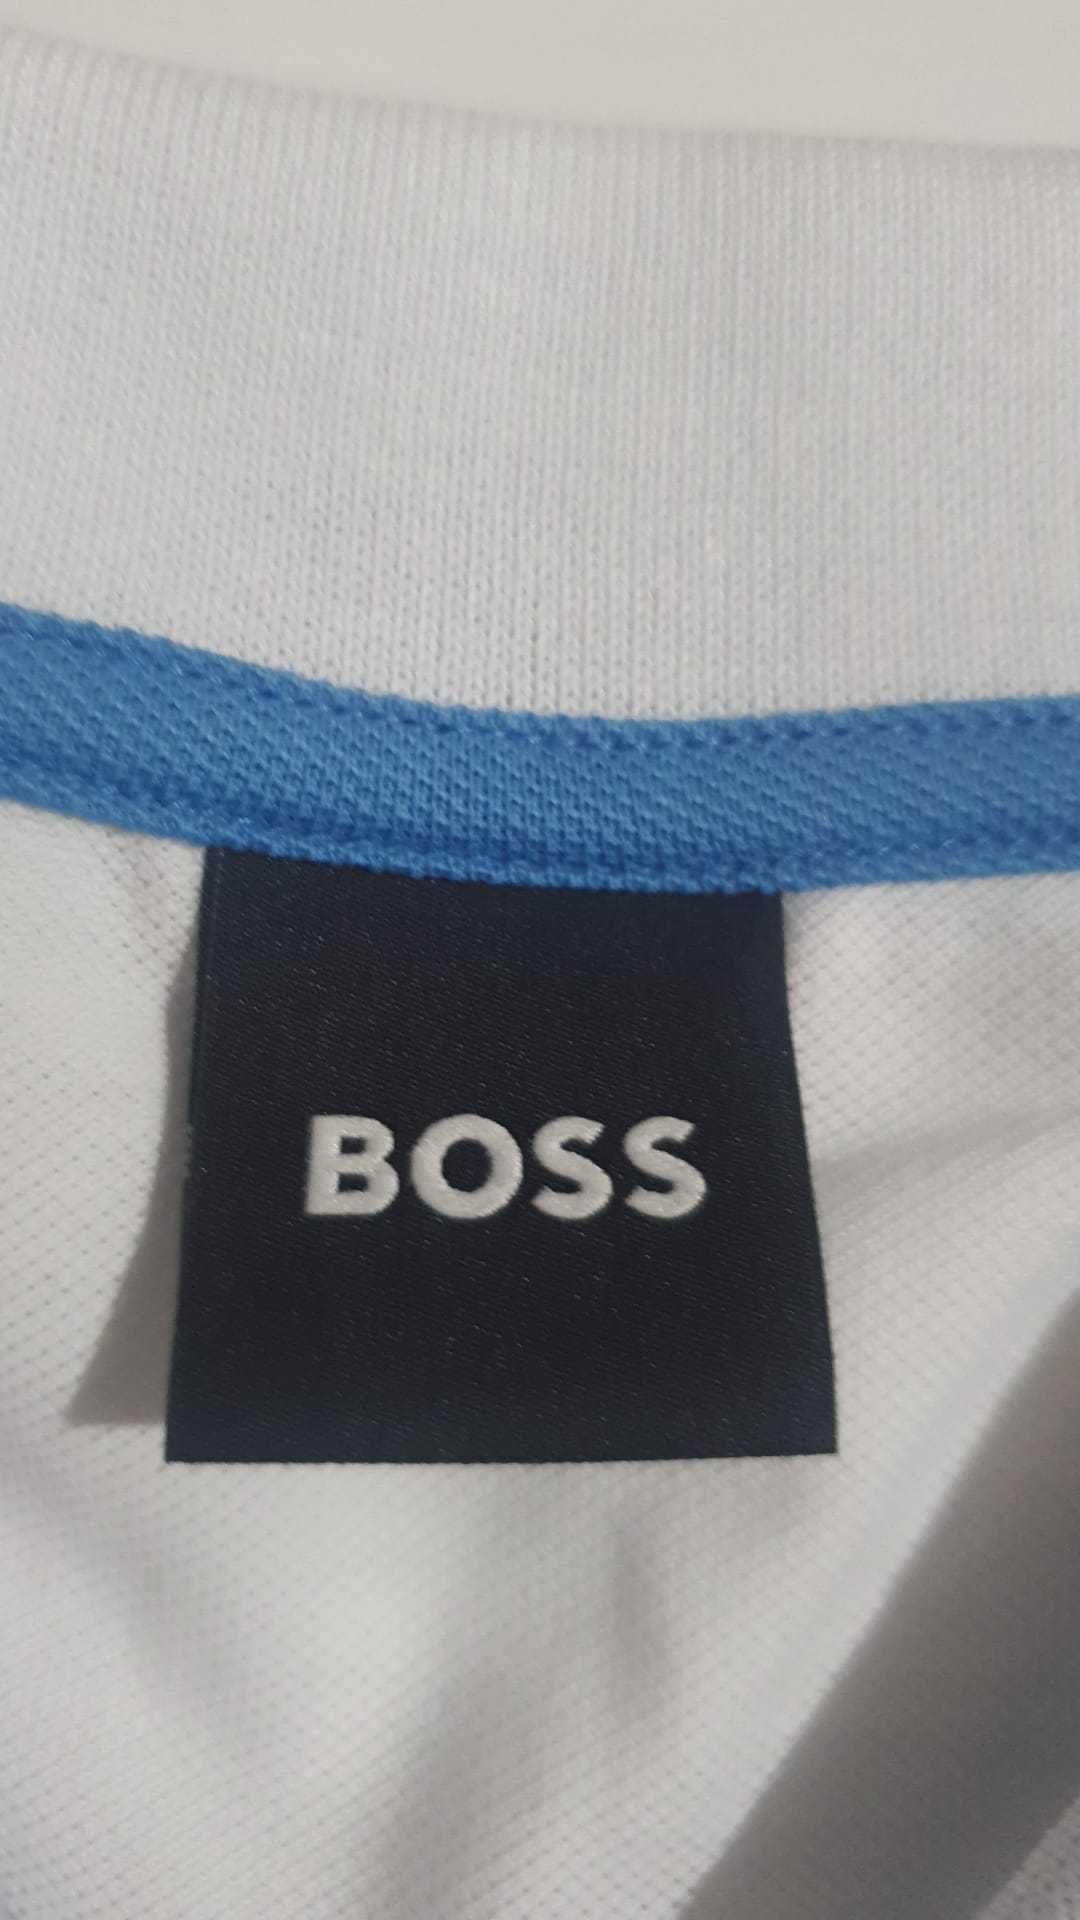 Vand tricou Hugo Boss masura L original nou cu eticheta